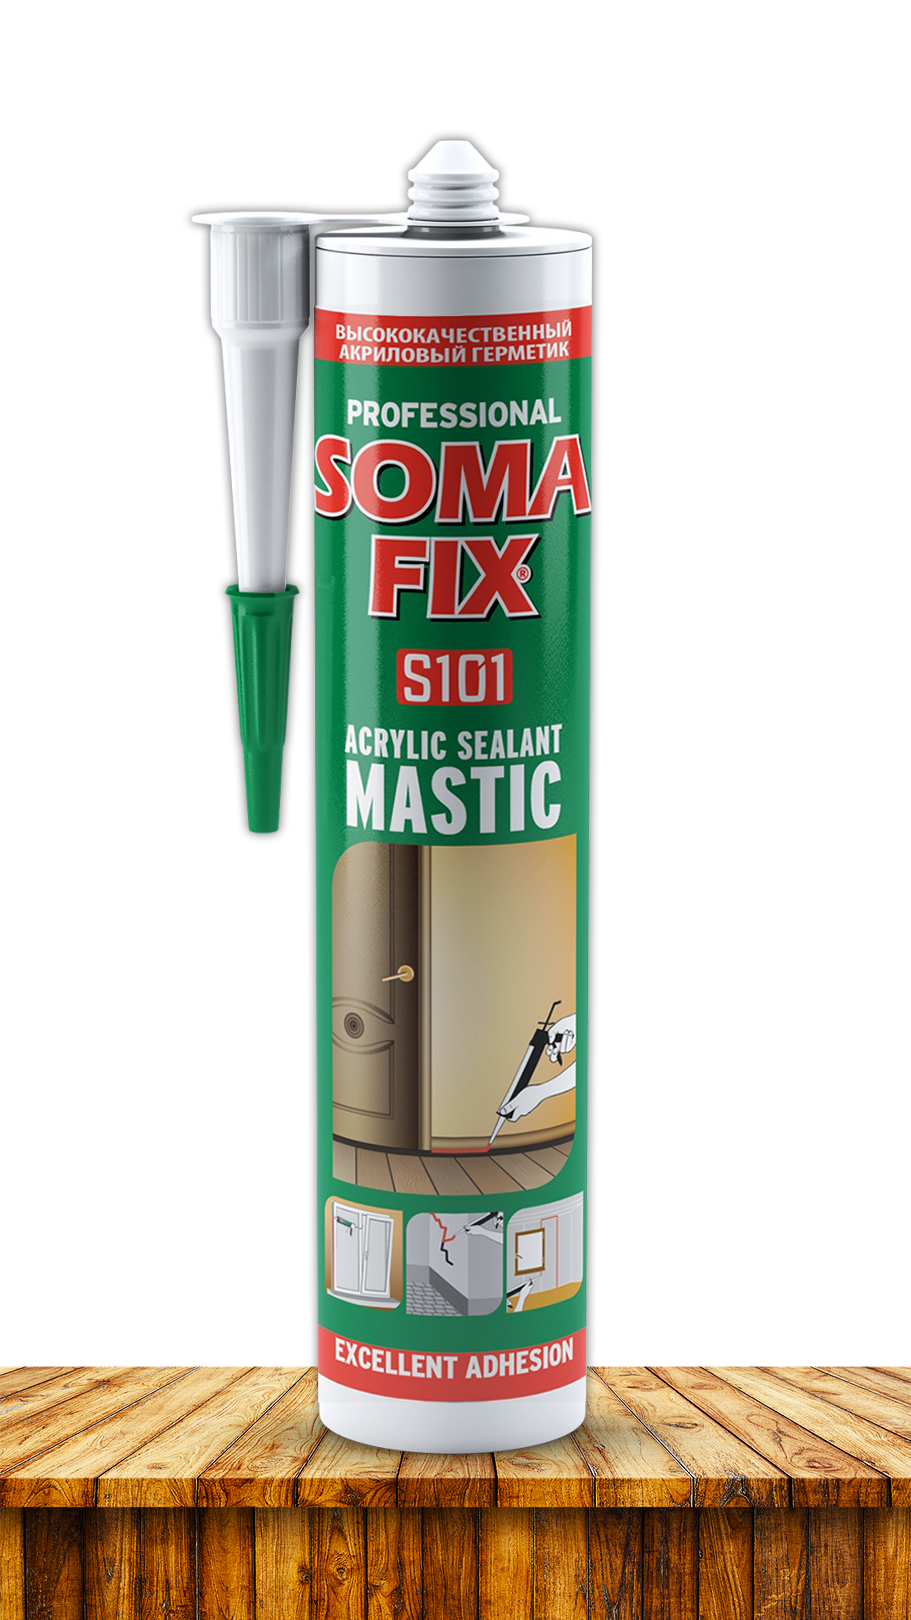 Акриловый герметик SOMA FIX Mastic 310 мл., белый S101. Купить от производителя по отличной цене